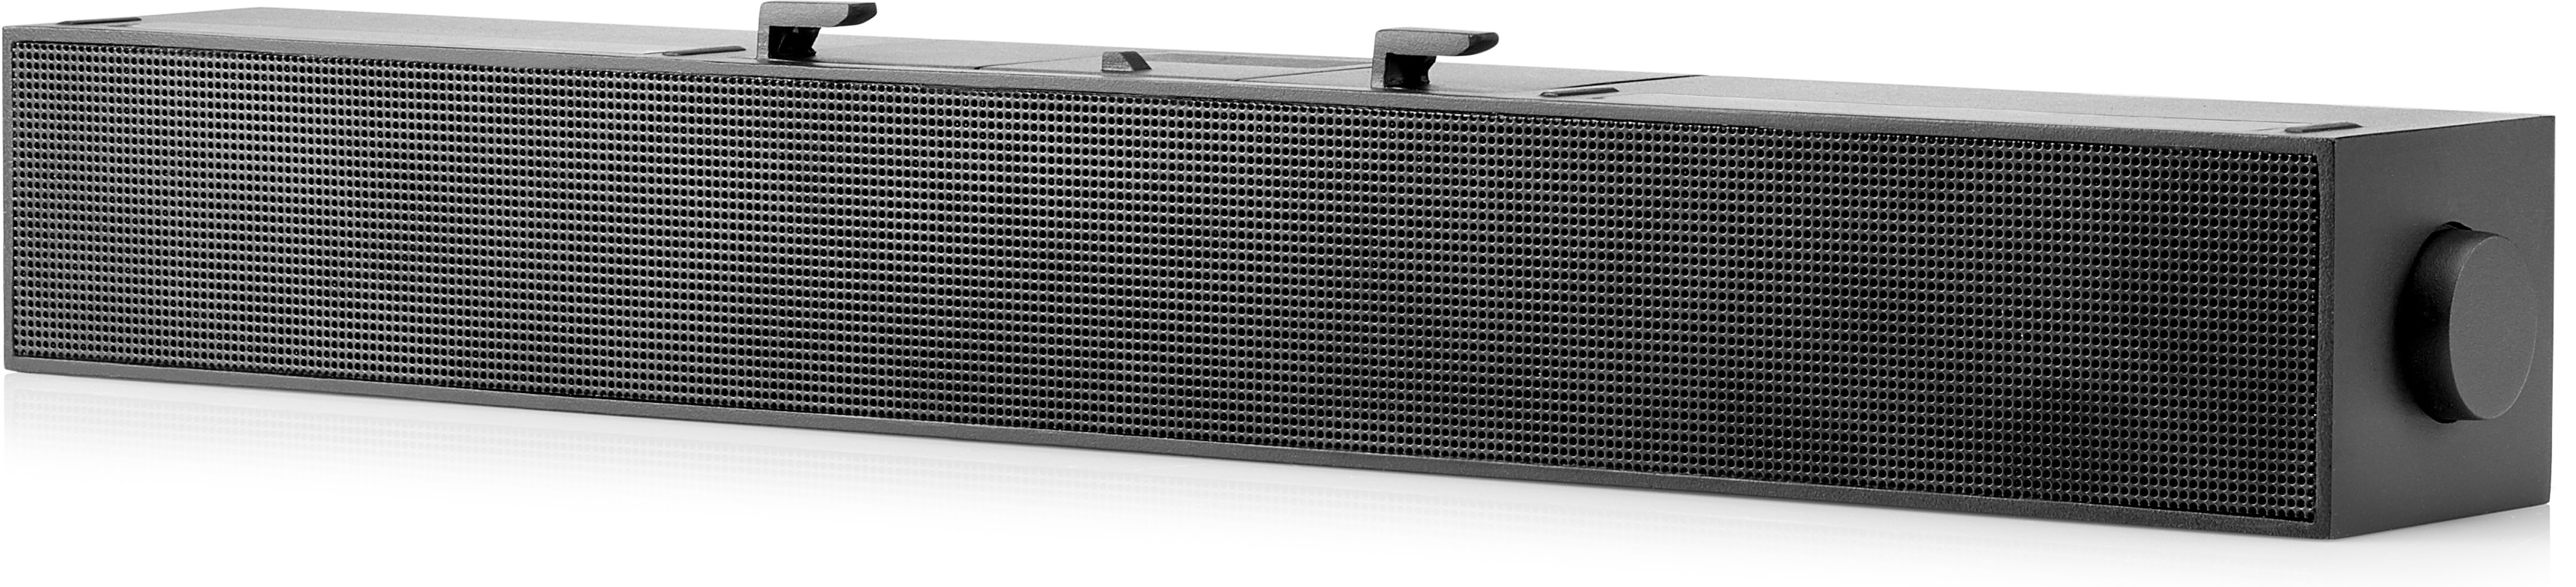 HP S101 - Soundbar - für Monitor - 2.5 Watt - Schwarz (Grill Farbe - Schwarz)